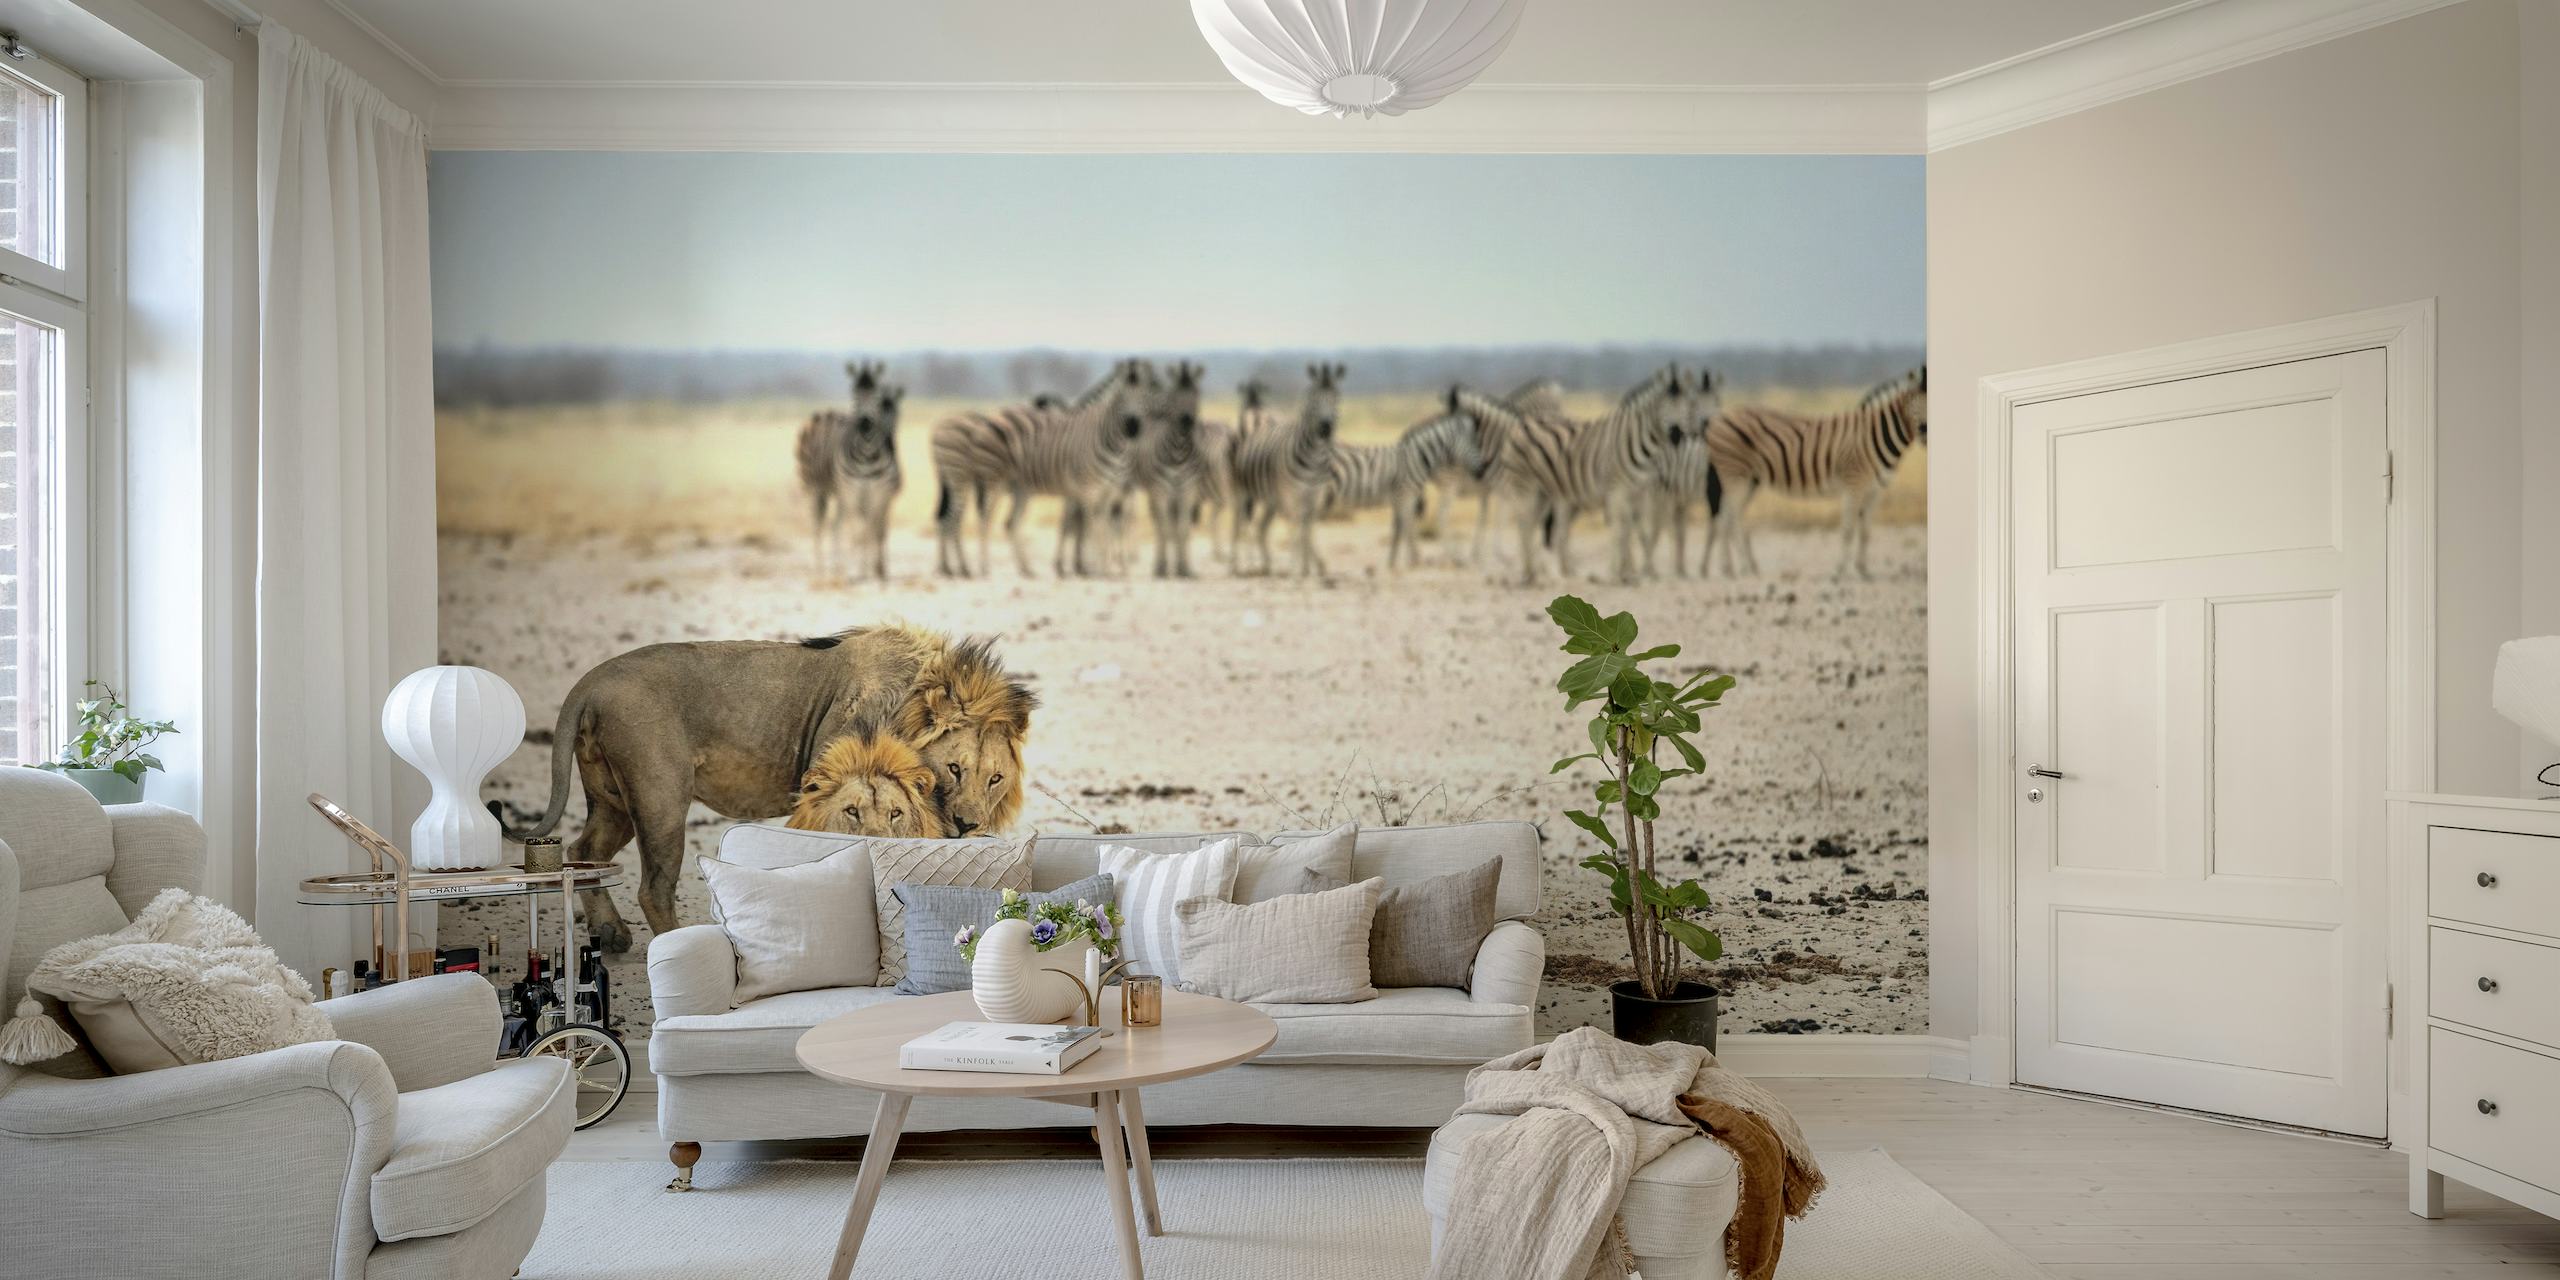 Leão e zebras em um fotomural vinílico de parede de savana africana